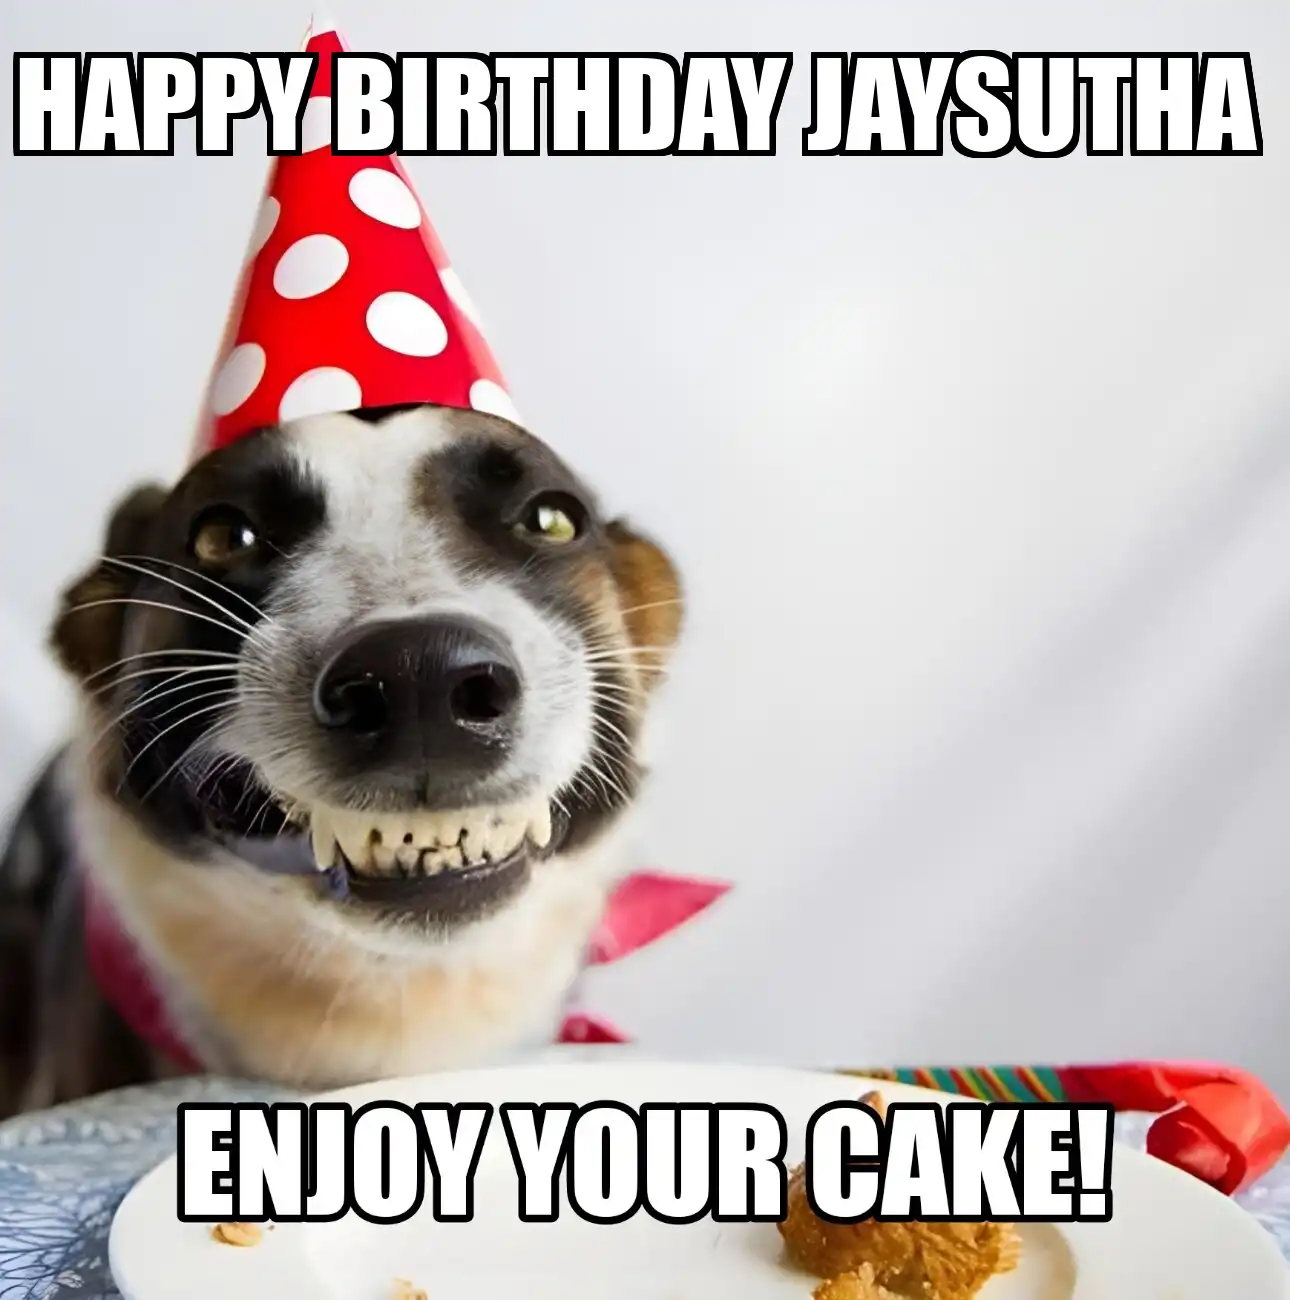 Happy Birthday Jaysutha Enjoy Your Cake Dog Meme